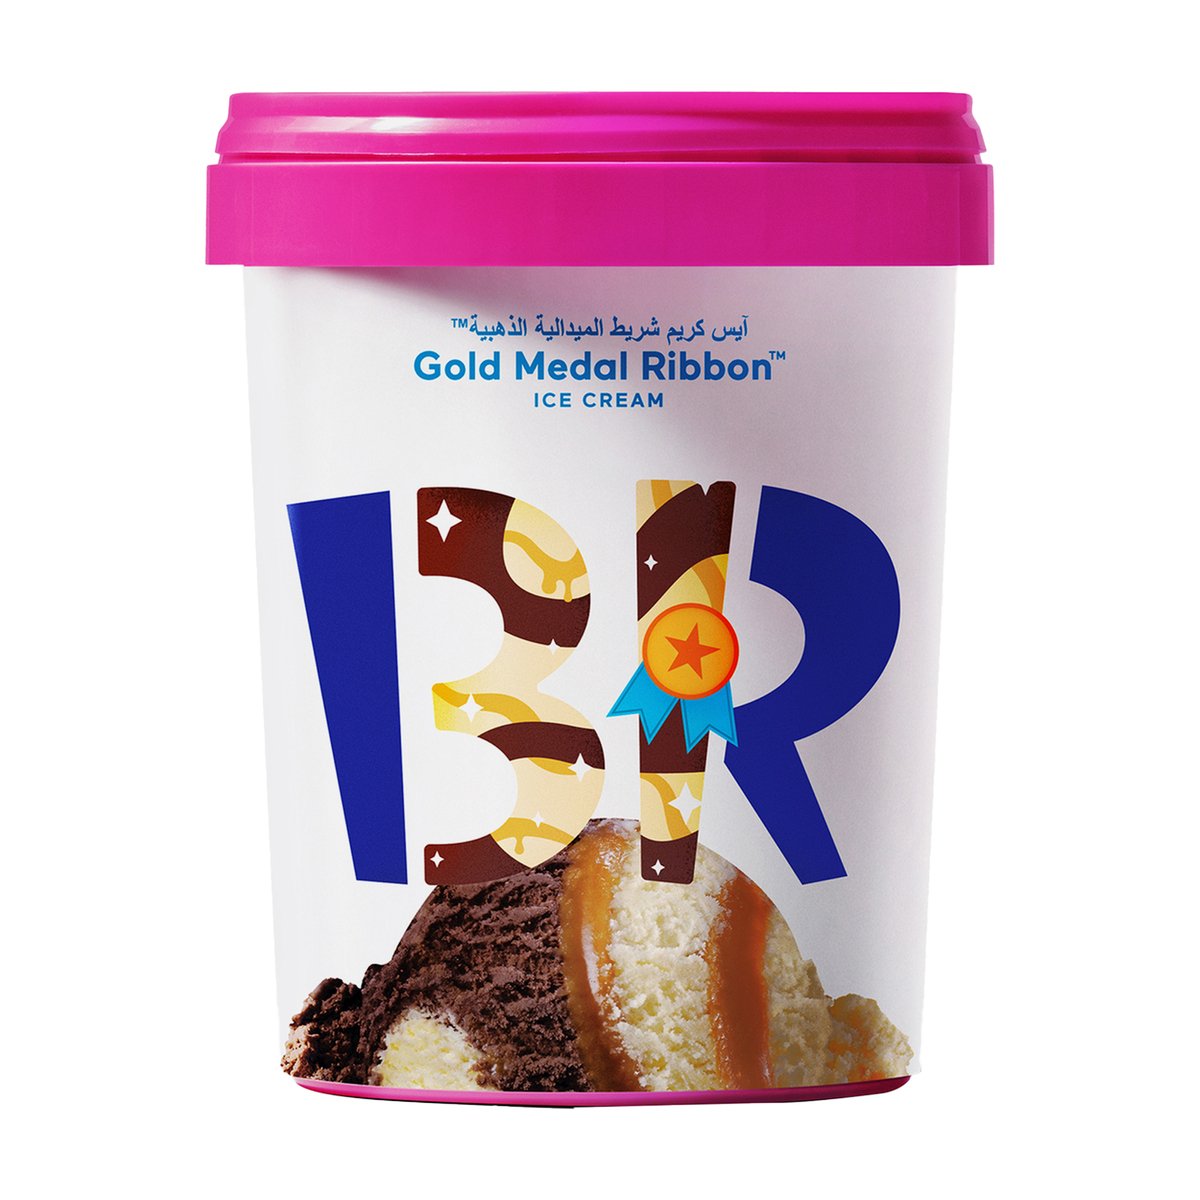 اشتري قم بشراء باسكن روبنز آيس كريم شريط الميدالية الذهبية 1 لتر Online at Best Price من الموقع - من لولو هايبر ماركت Ice Cream Take Home في الامارات